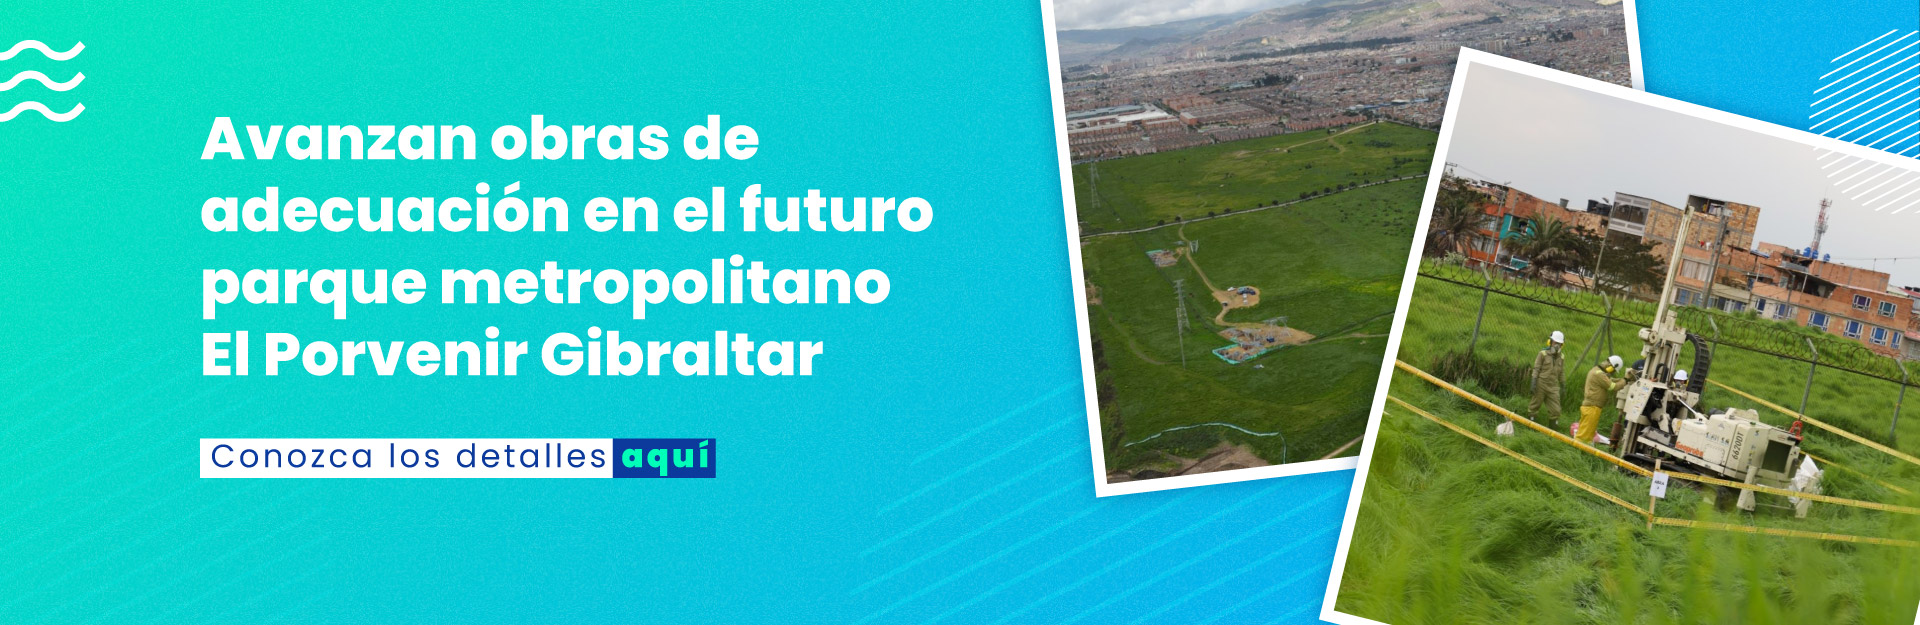 Acueducto de Bogotá obtiene el máximo reconocimiento por sus prácticas sostenibles